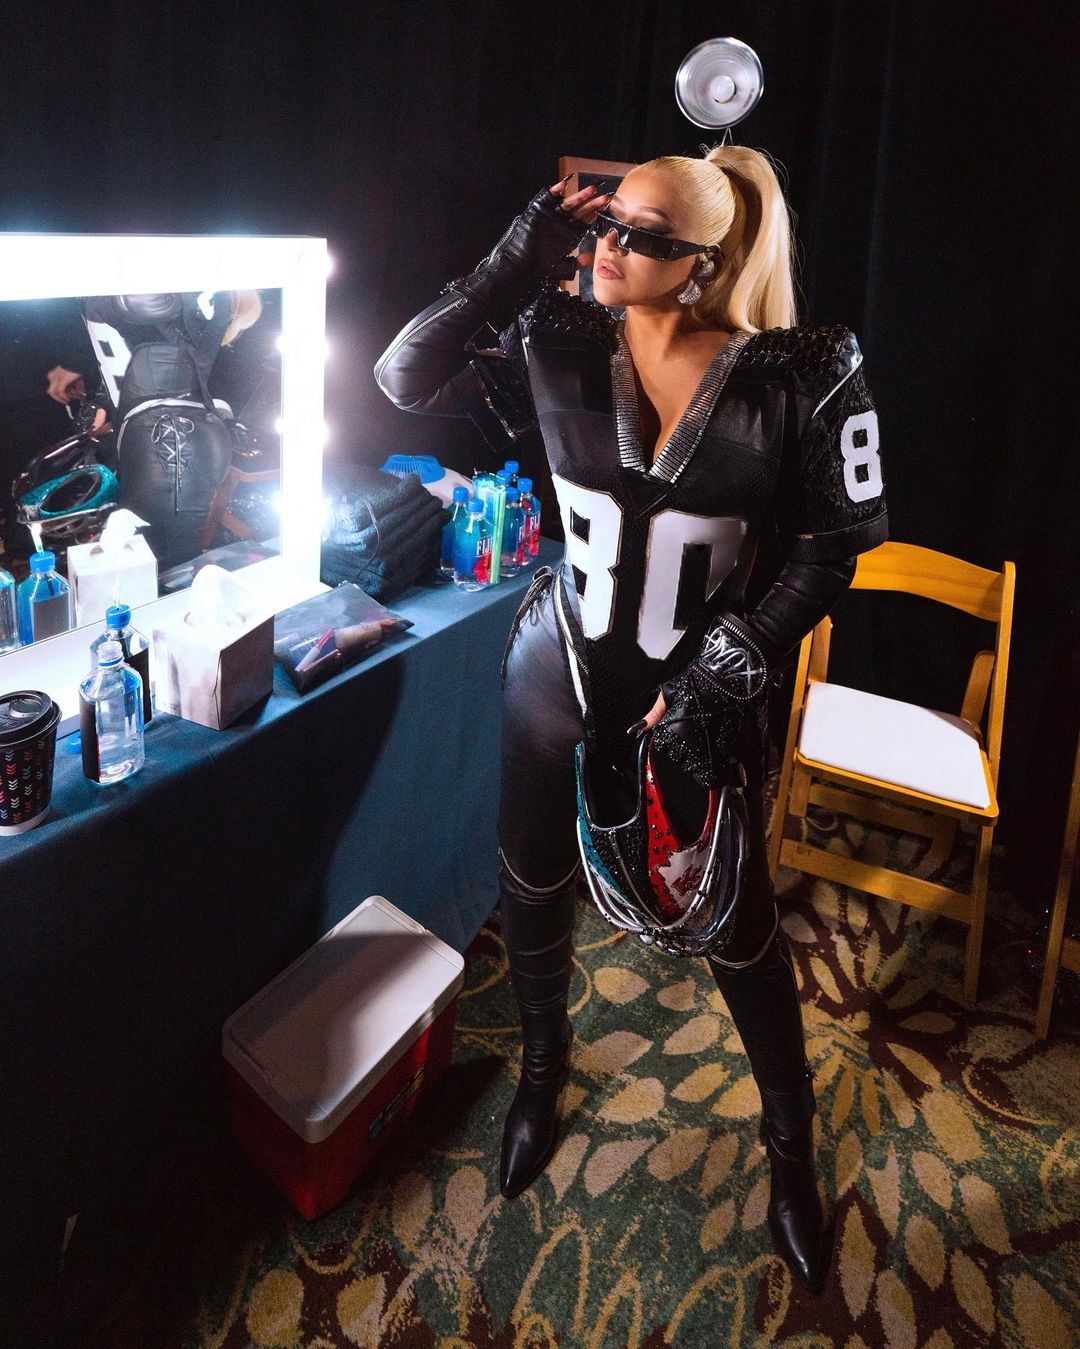 Fotos n°9 : Christina Aguilera est animando al Equipo Rihanna!